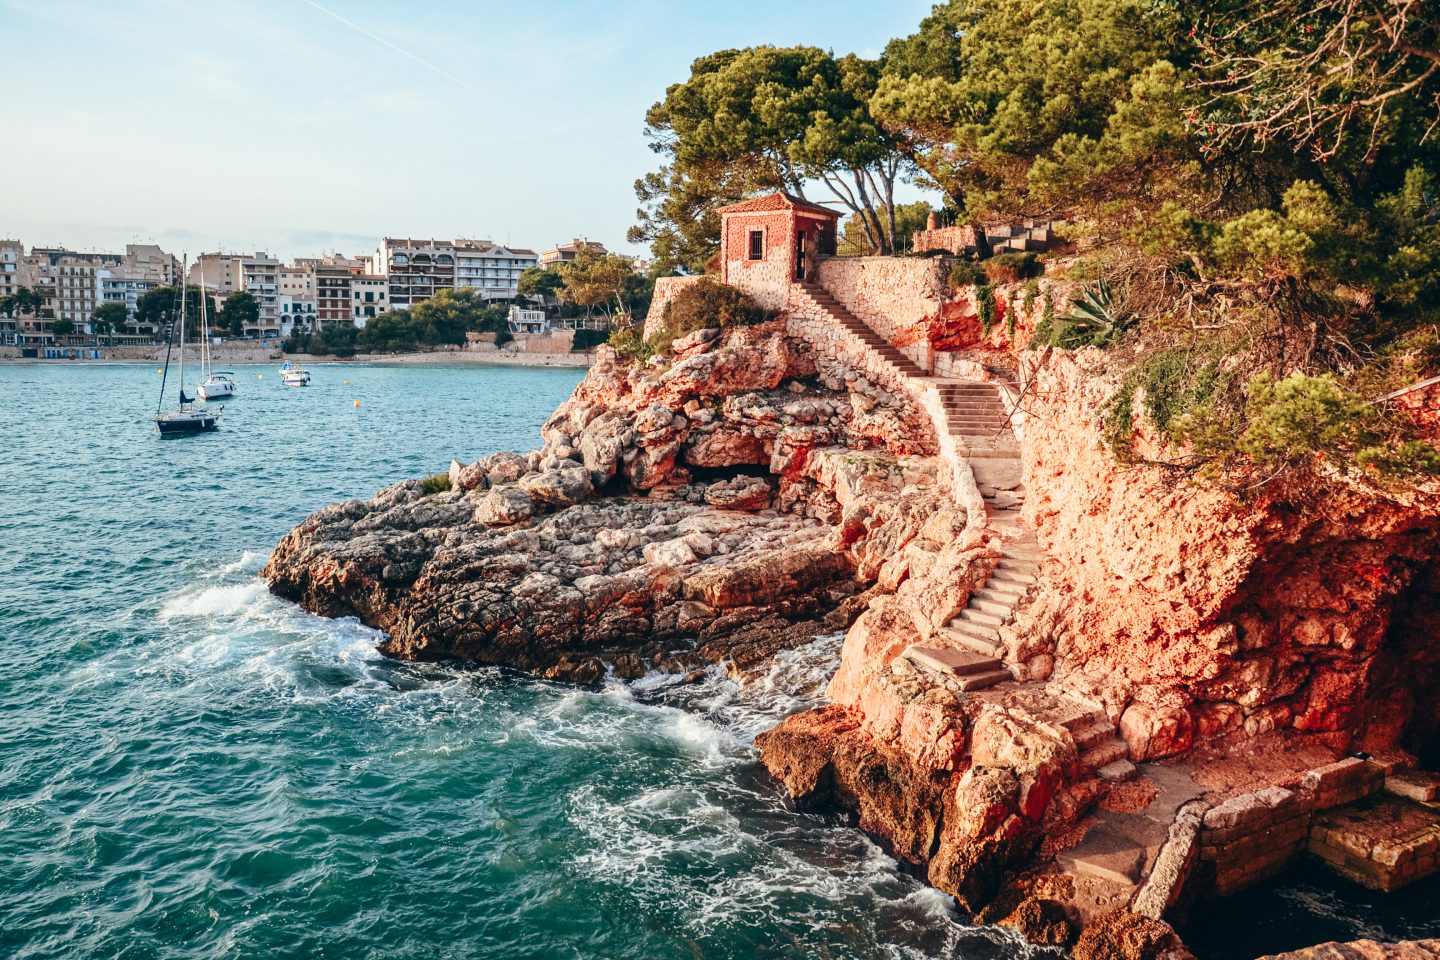 Wakacje na Majorce – co warto zobaczyć i gdzie się zatrzymać? Najpiękniejsze plaże, Palma de Mallorca, Alcudia, Plaża Es Trenc, Cap de Formentor I inne atrakcje